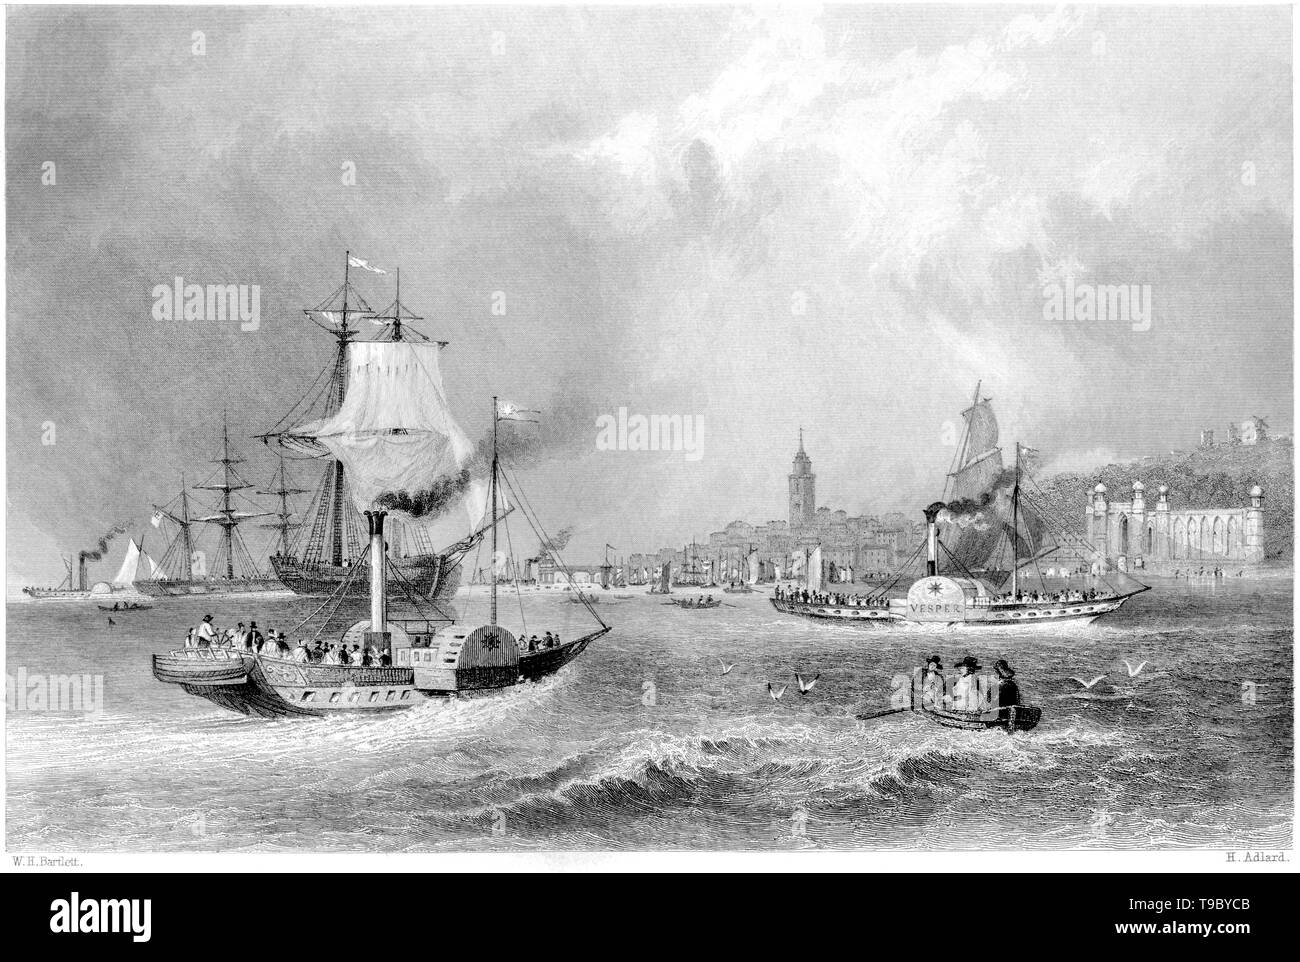 Ein Kupferstich von Gravesend vom Fluss gescannt und in hoher Auflösung aus einem Buch 1842 veröffentlicht. Glaubten copyright frei. Stockfoto